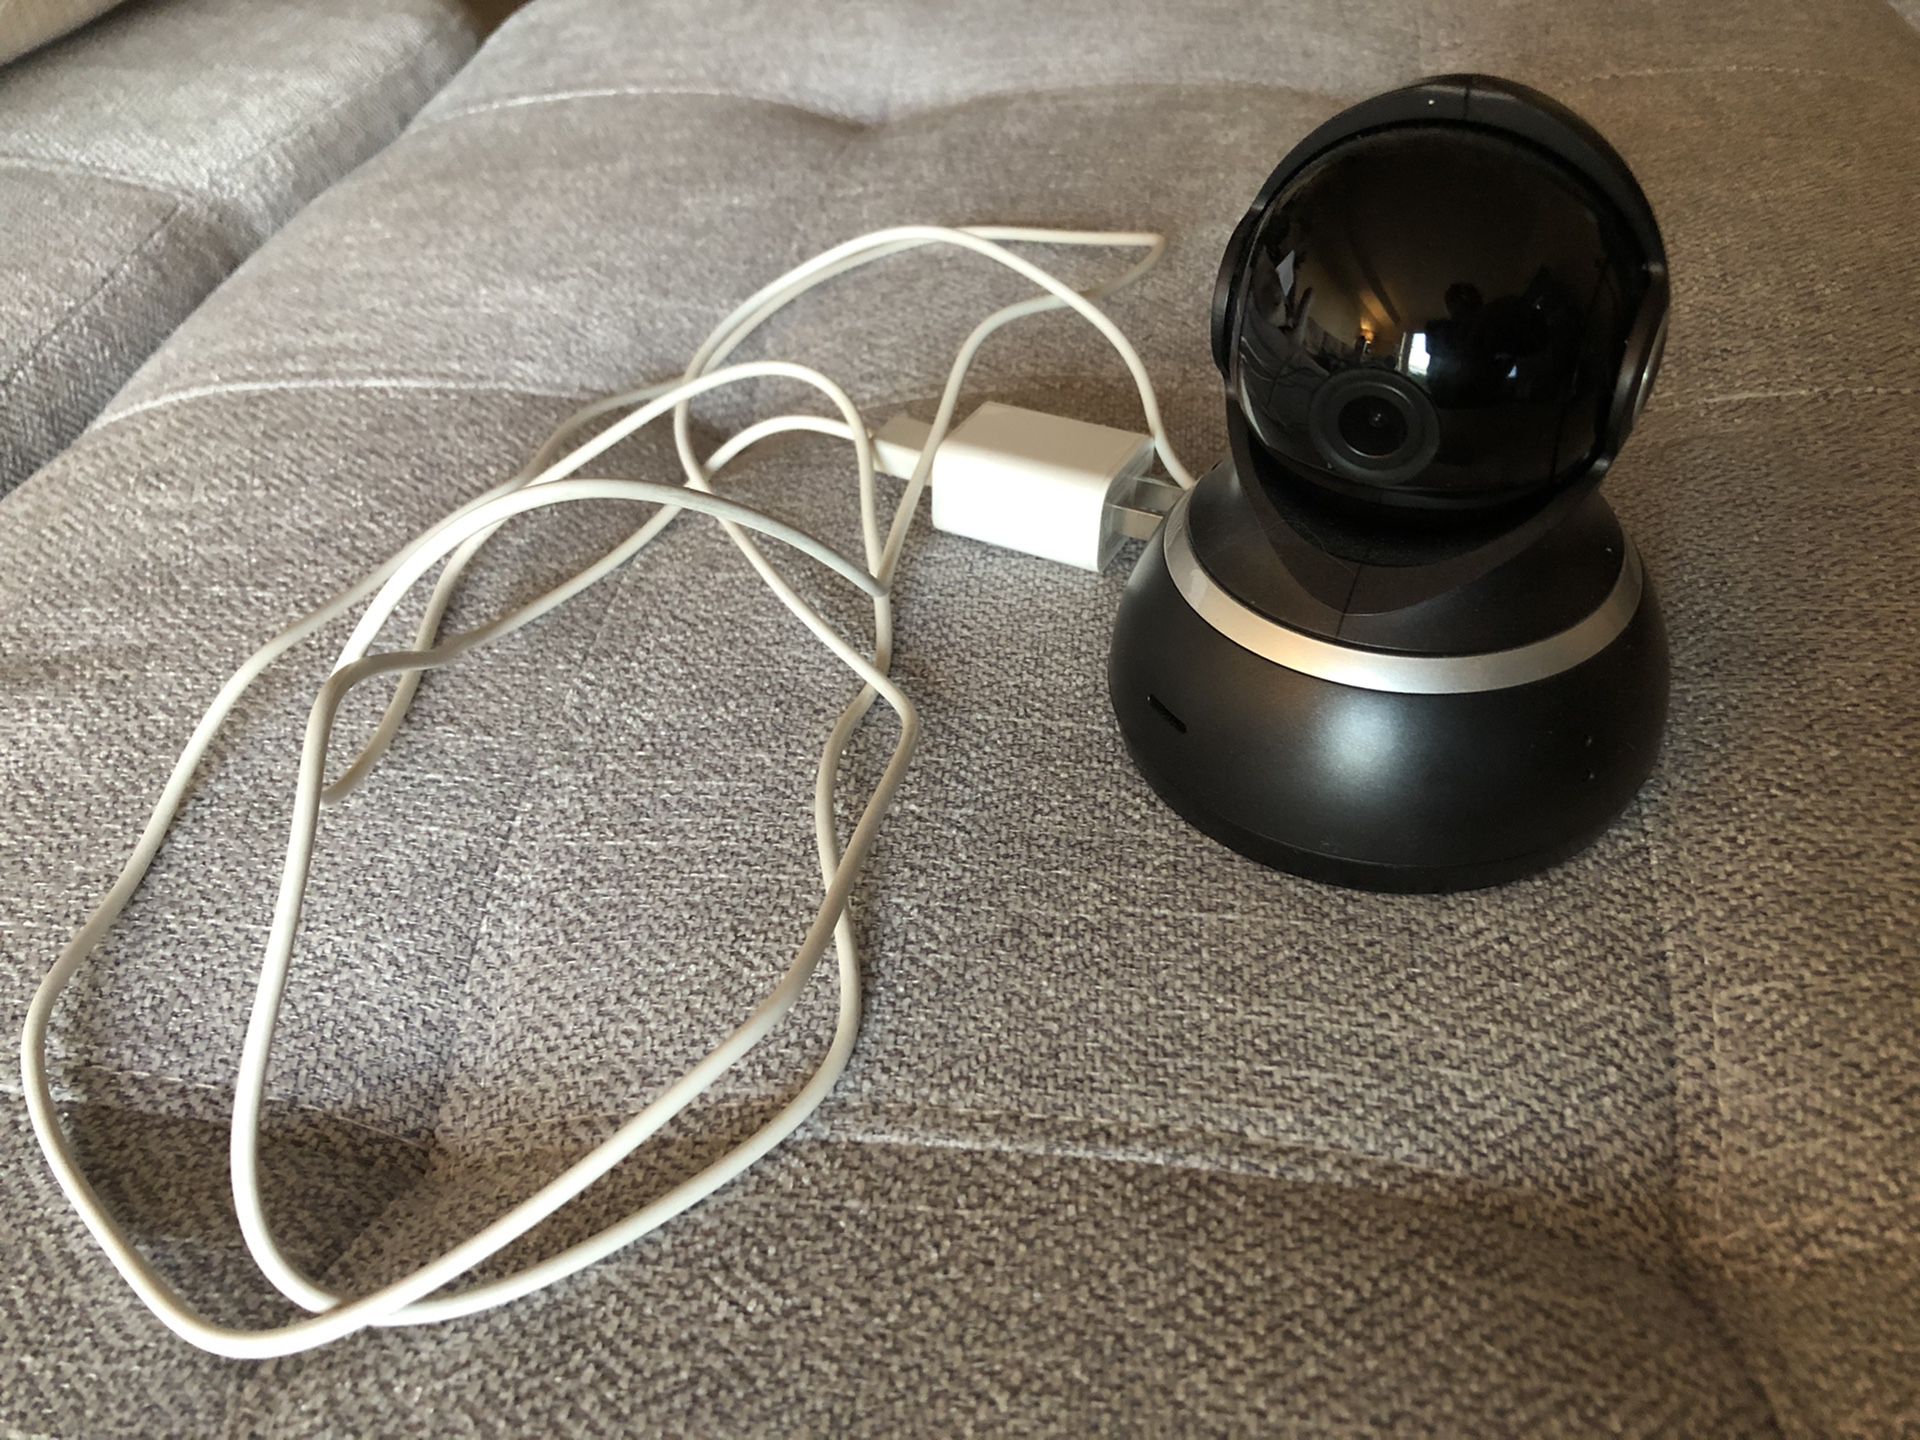 Pet Cam: YI Dome Security Camera 1080p HD Pan/Tilt/Zoom